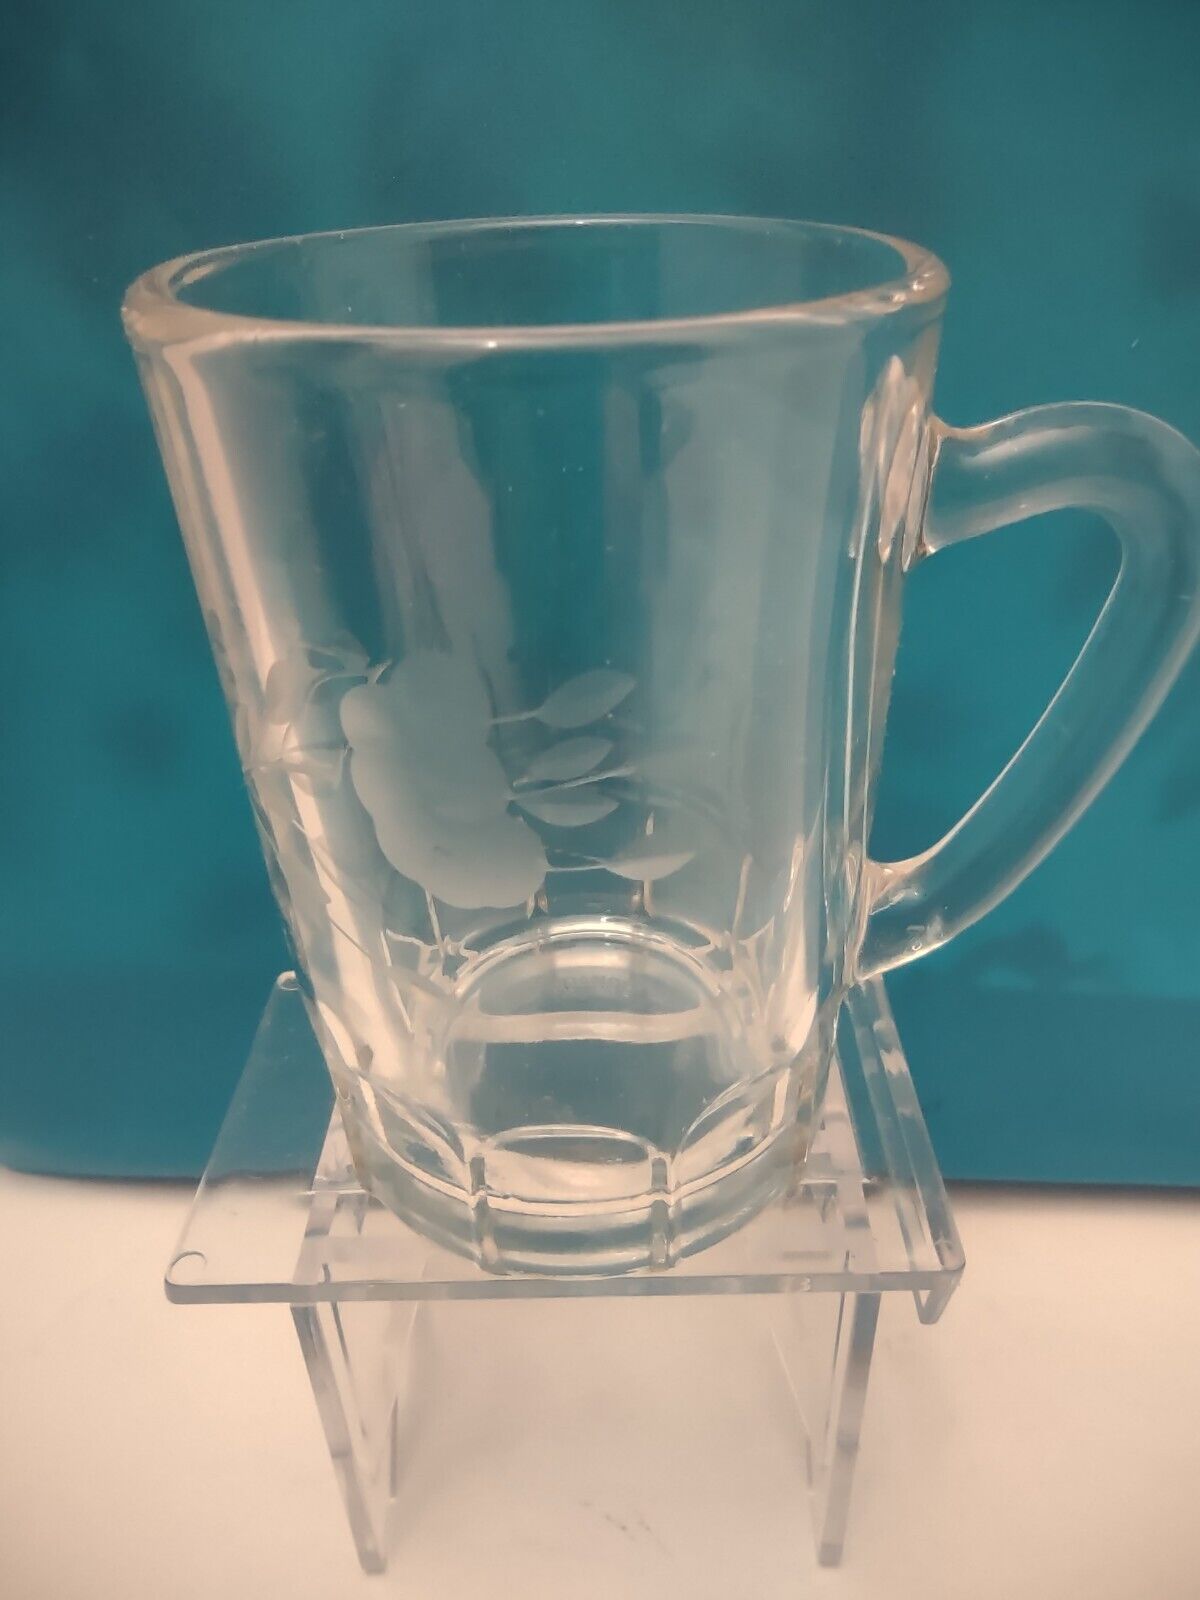 Princess House heritage crystal shot glass with handle mini 3” Kid Cup glass mug